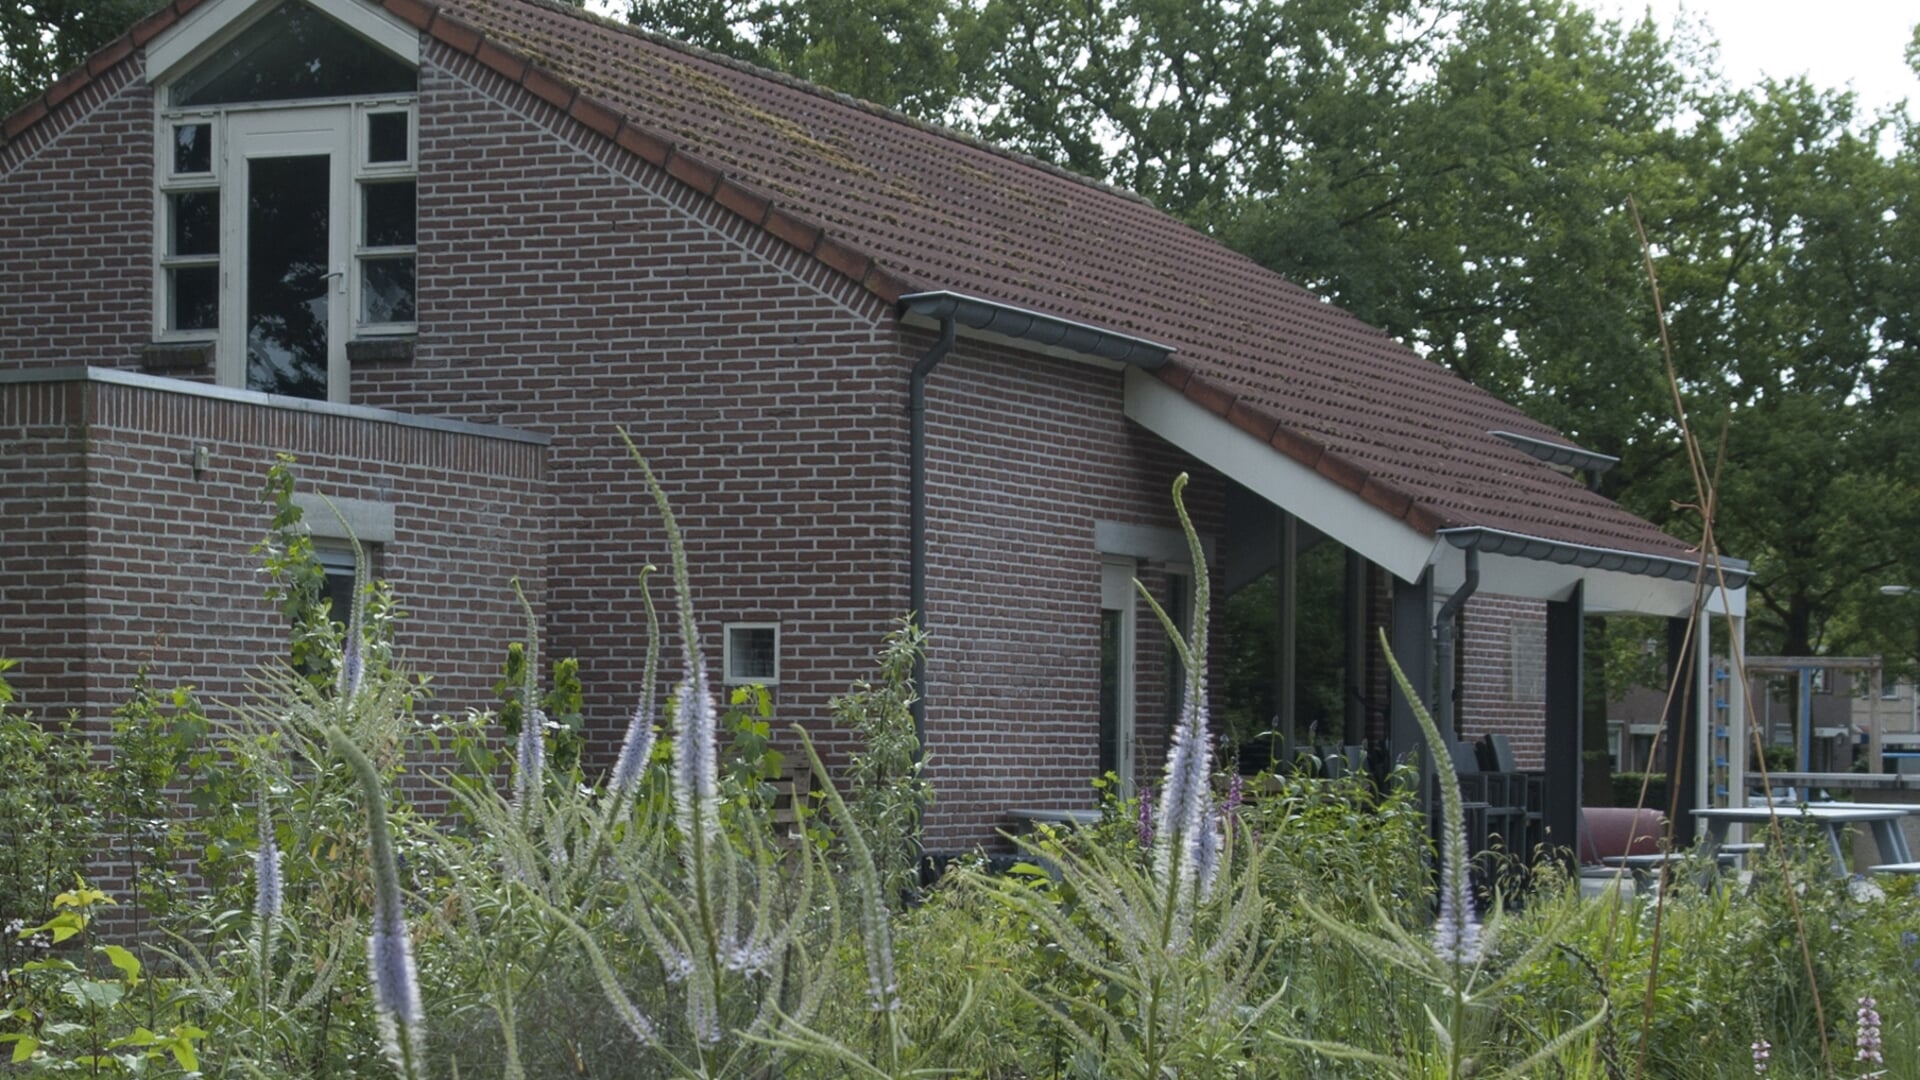 Wijkgebouw De Schoppe in Lichtenvoorde. Foto: archief Achterhoek Nieuws